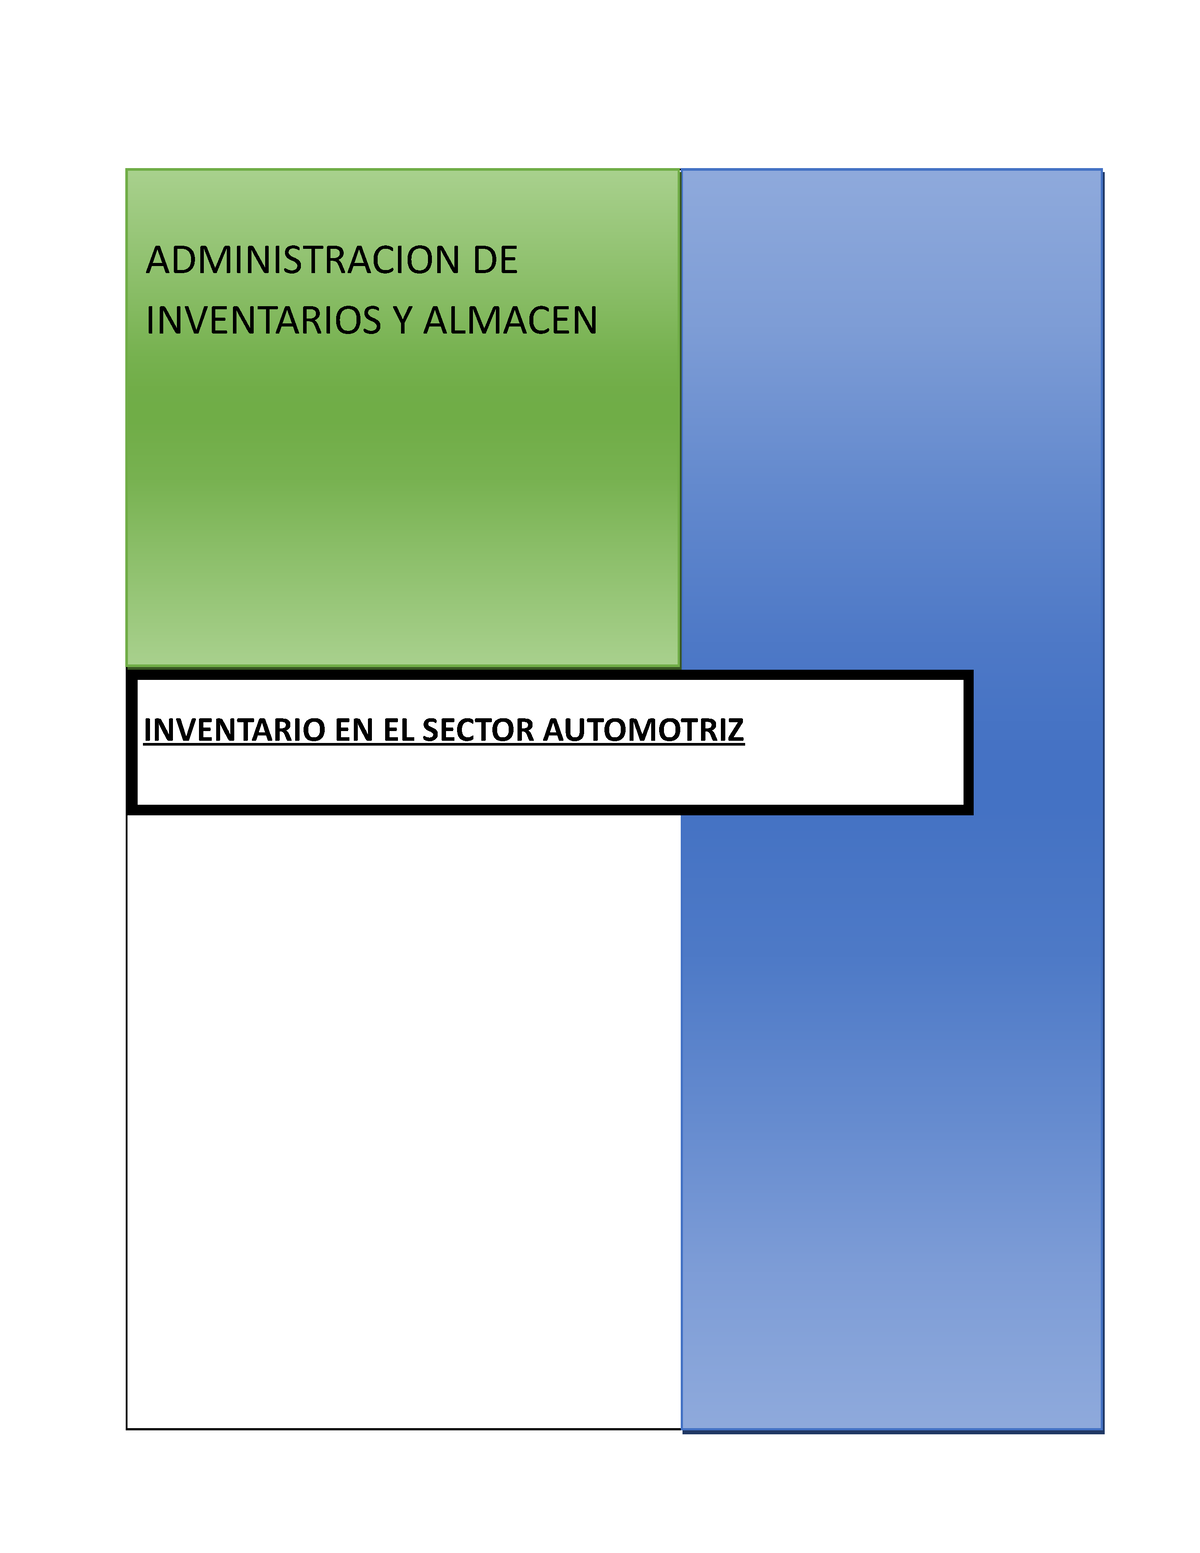 Ea2 Apoyo Inventario En El Sector Automotriz Administracion De Inventarios Y Almacen 3928